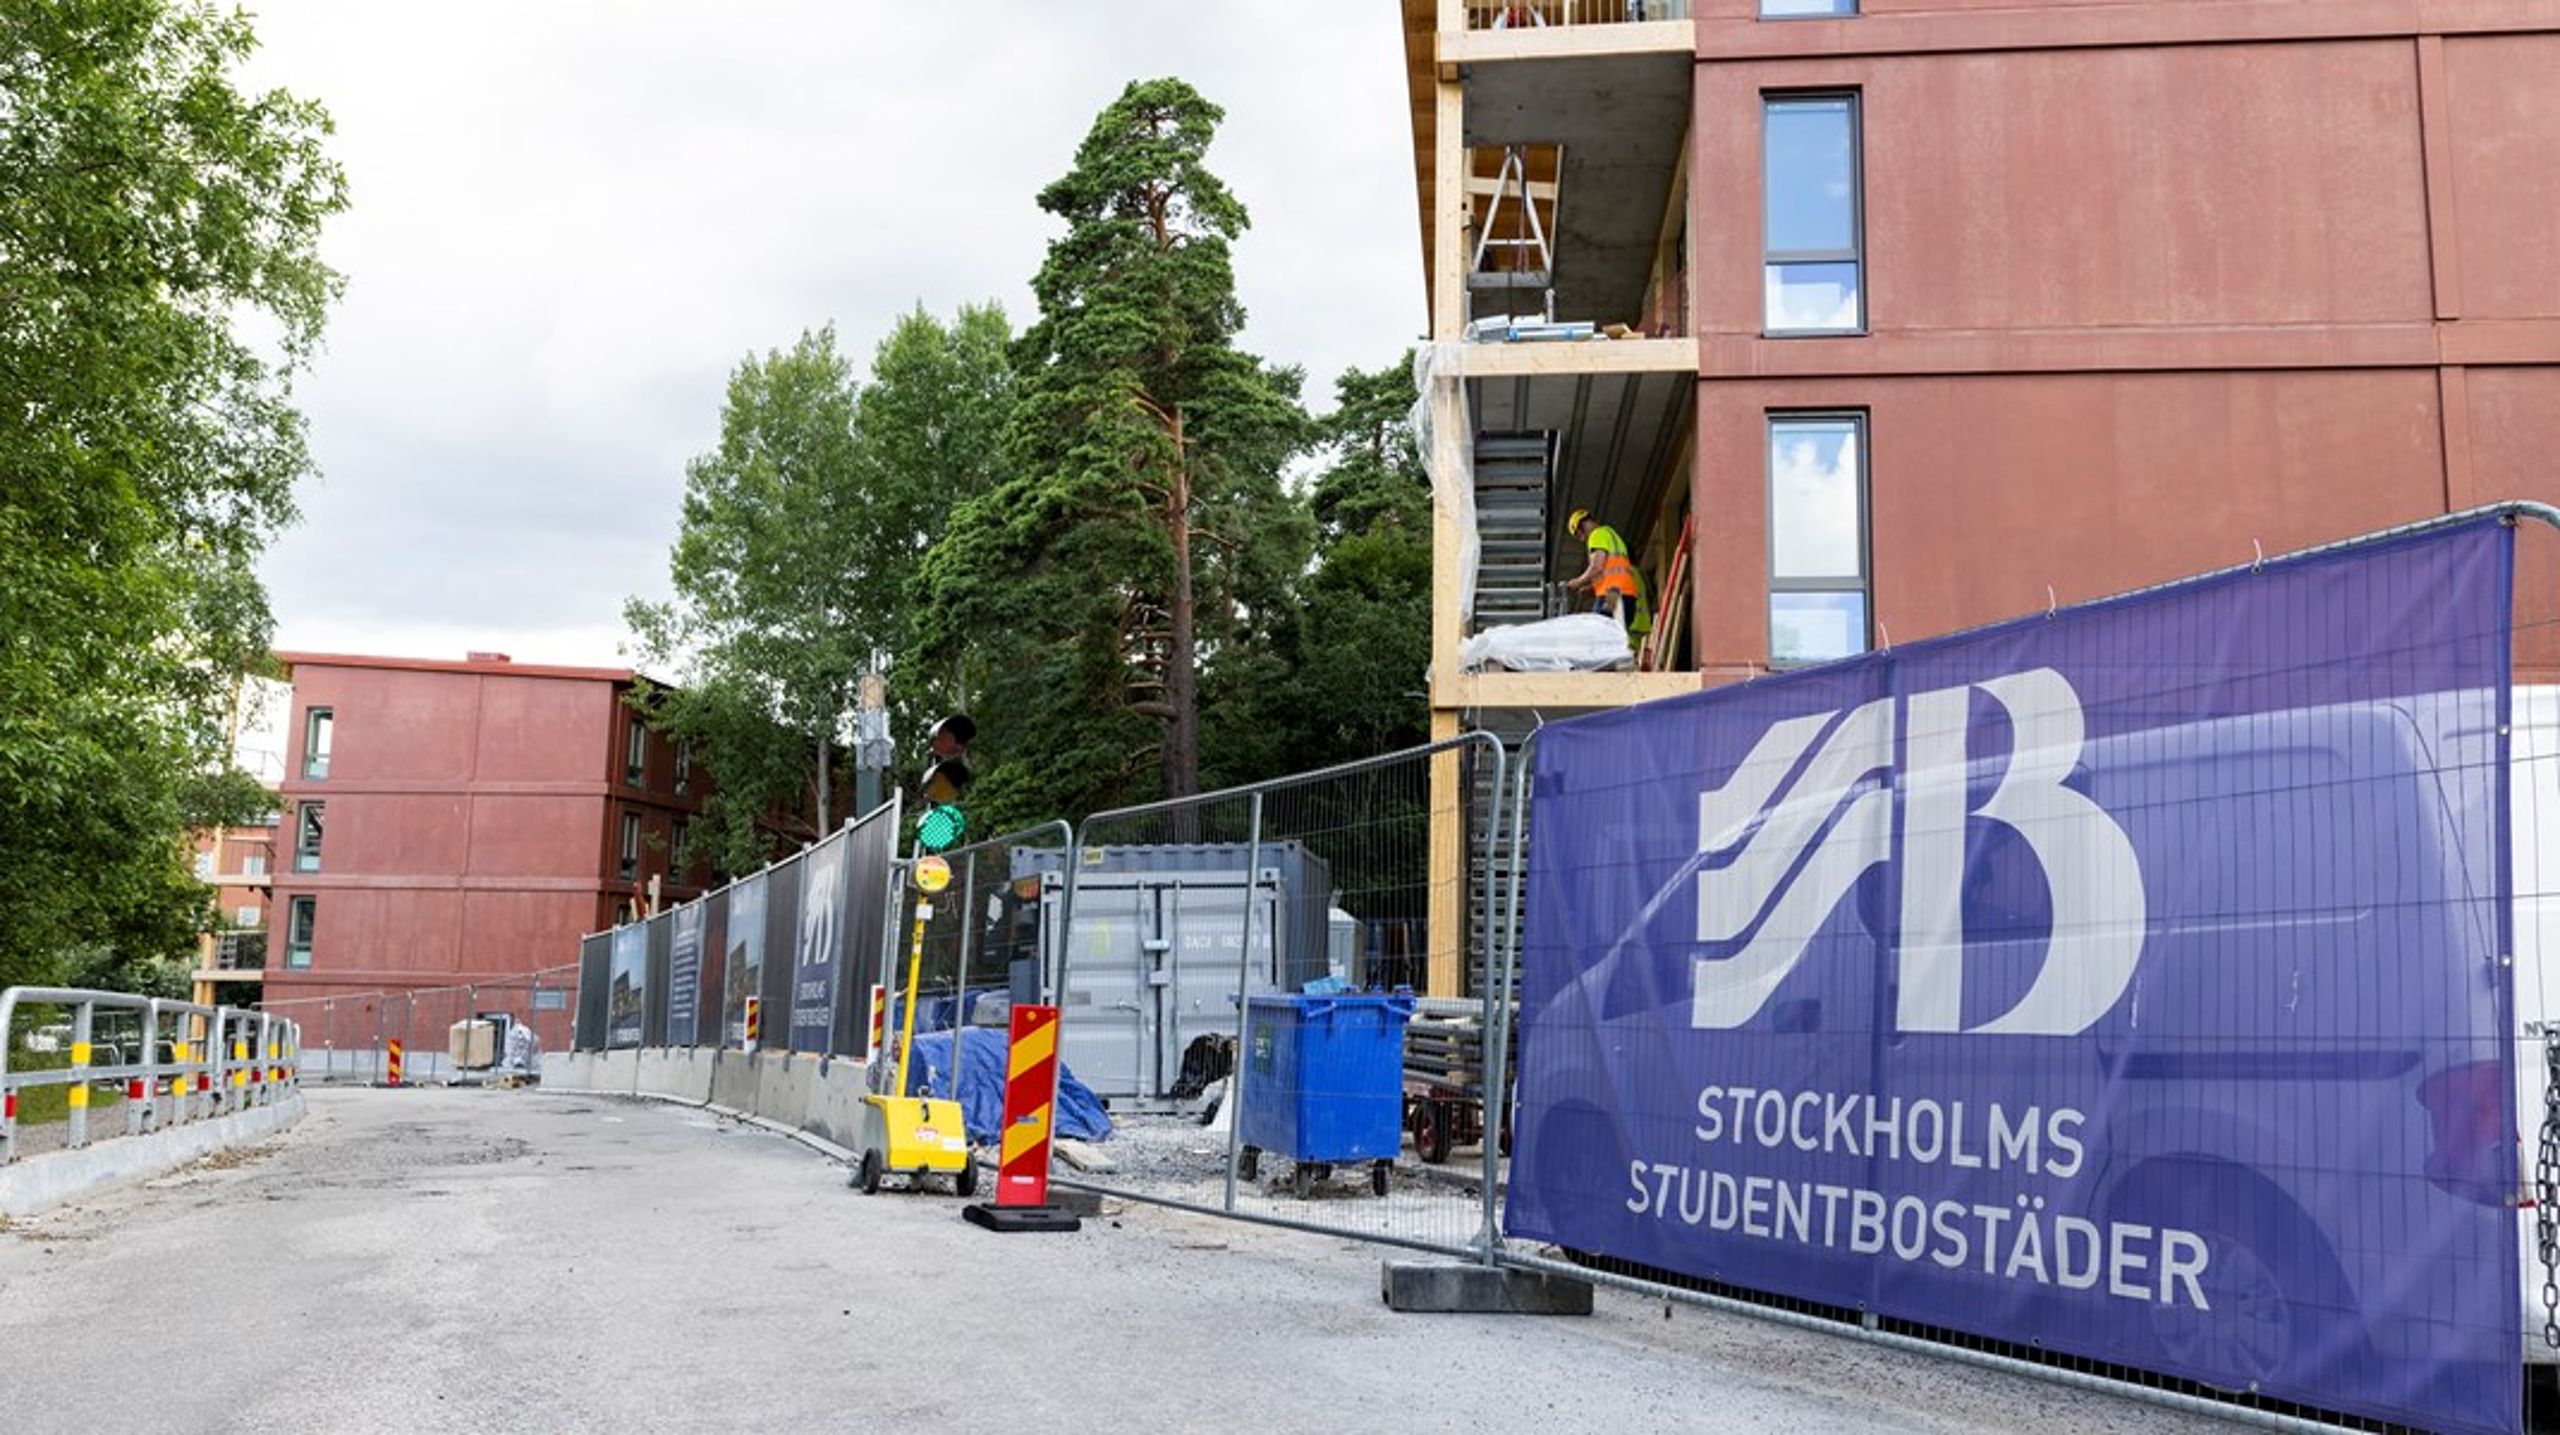 ”Sjutton av Sveriges högskolekommuner bedömer att det är brist på studentbostäder i sina kommuner. Sveriges förenade studentkårer valde i år att rödlista tio städer i sin bostadsgenomgång.”